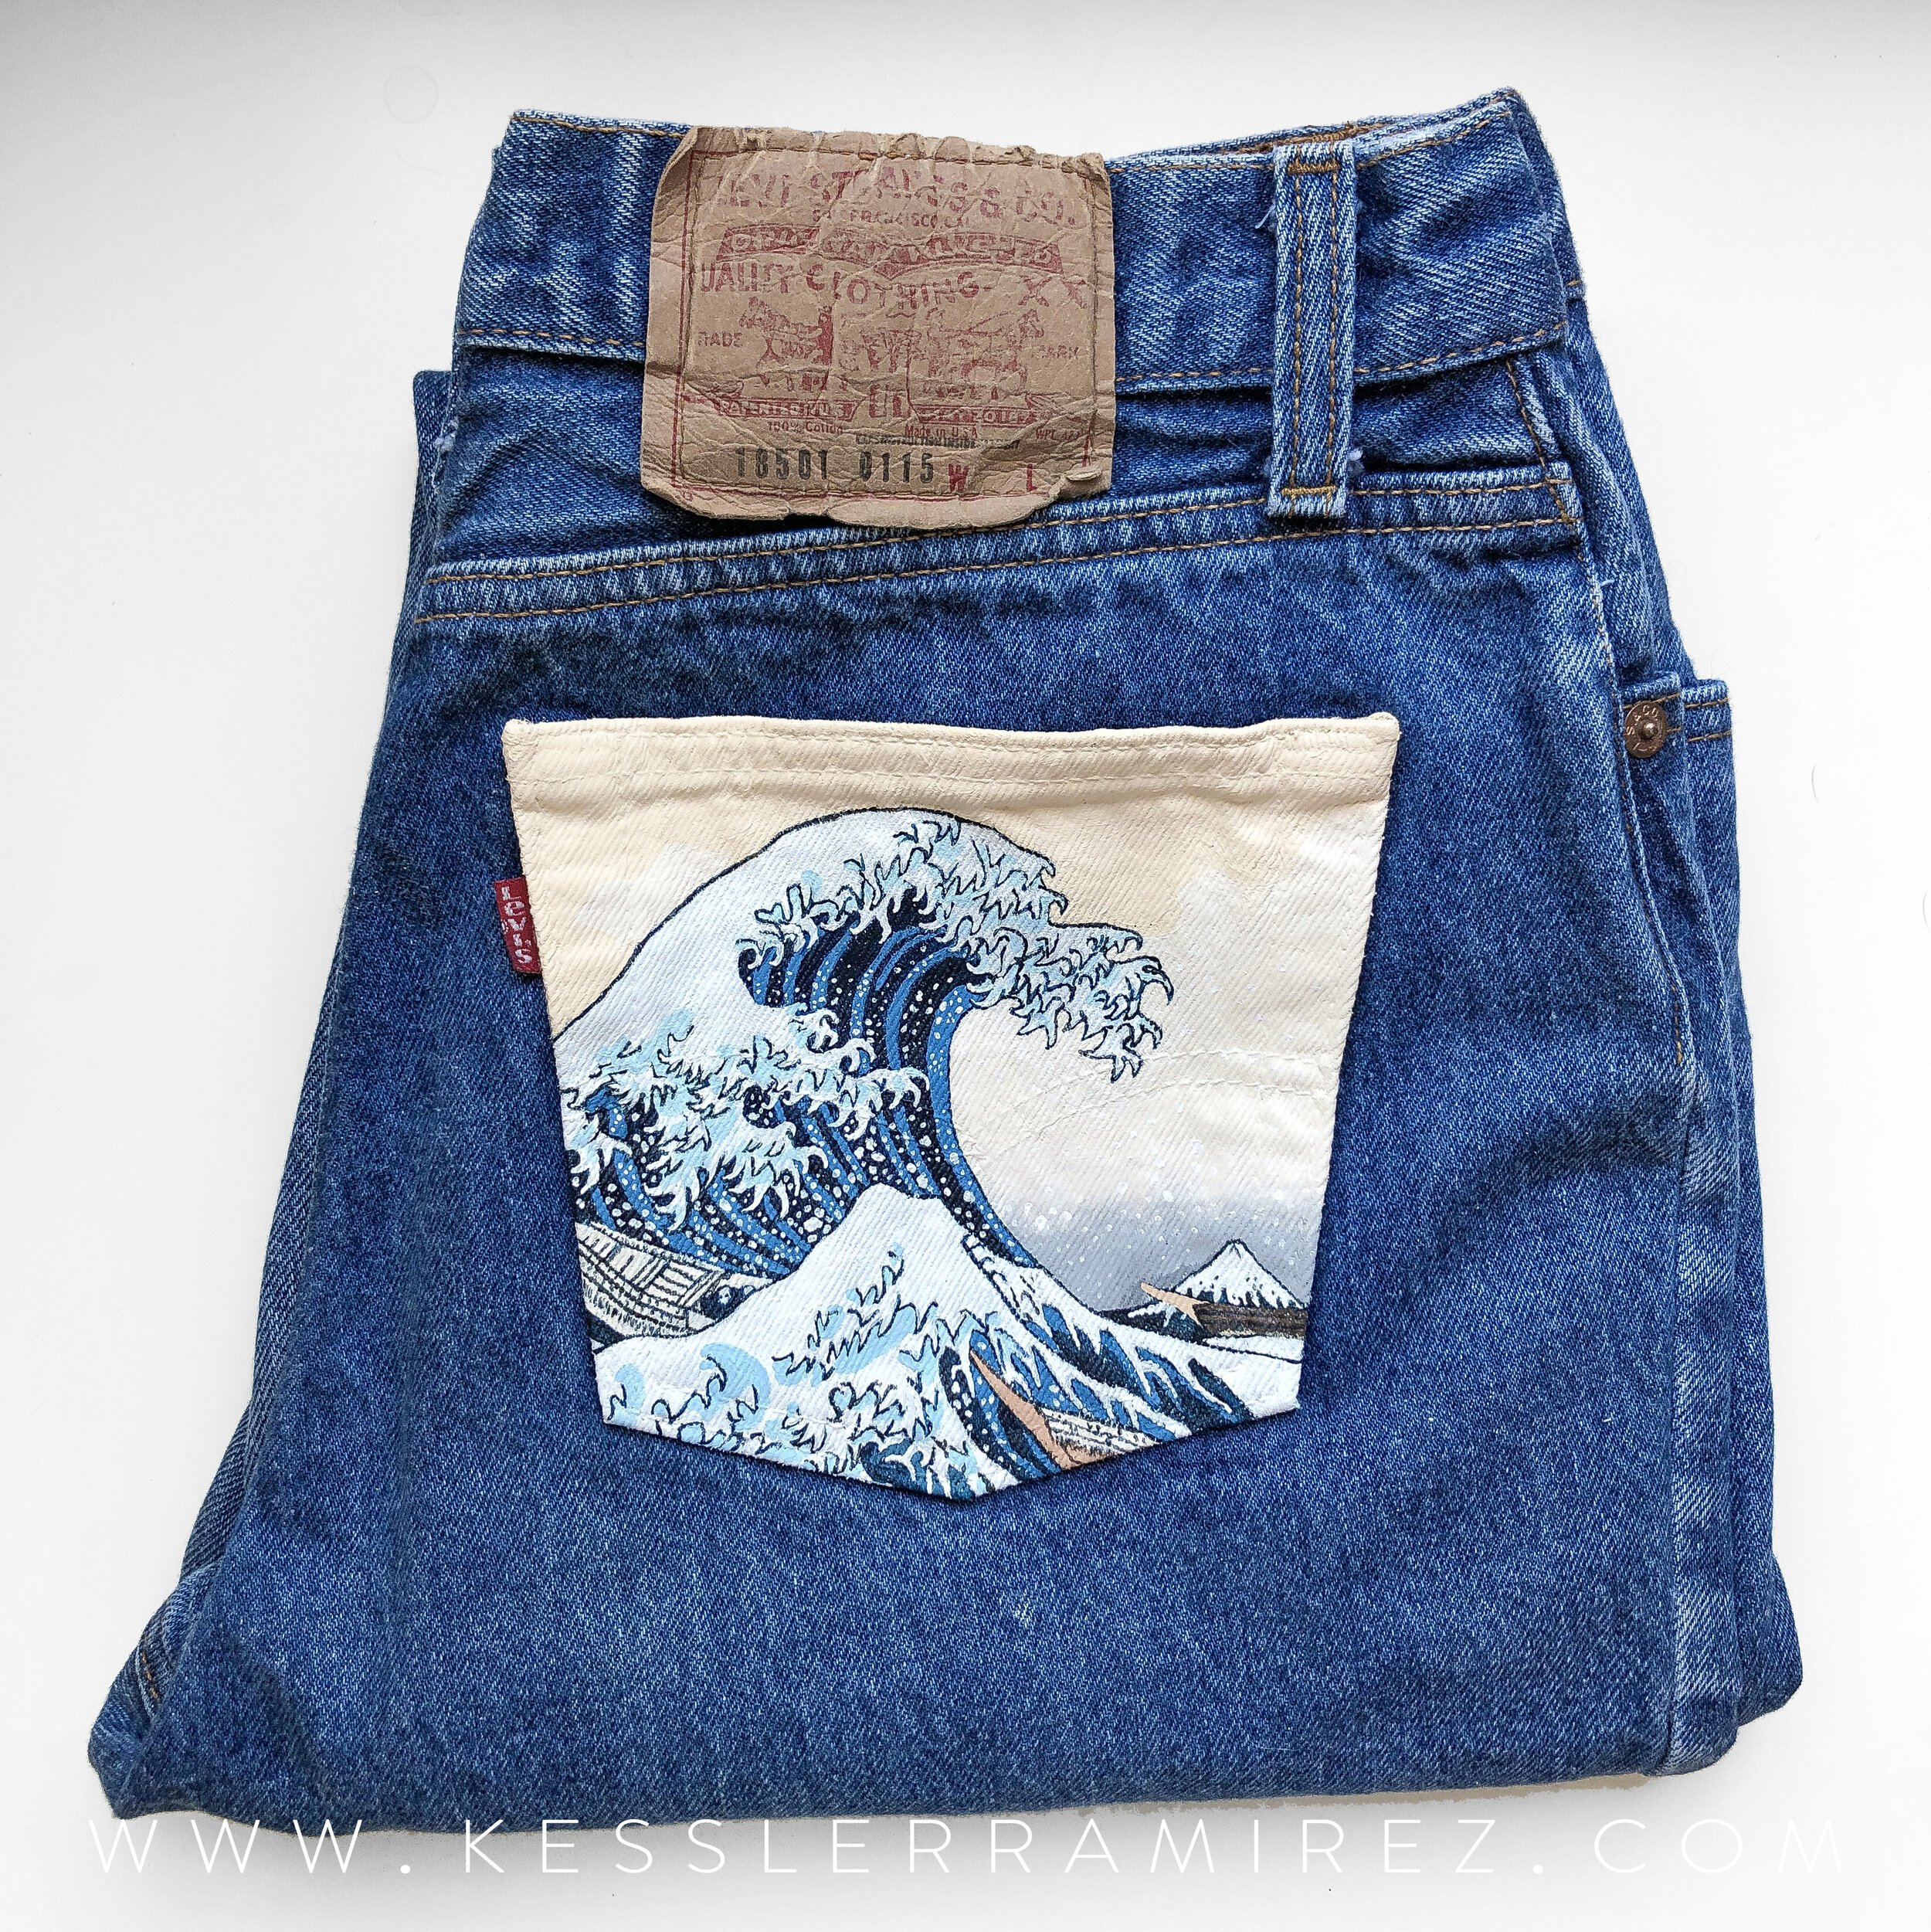 Карман джинсов рисунок. Расписные джинсы. Роспись на джинсах. Разрисованные карманы джинс. Рисование на карманах джинс.